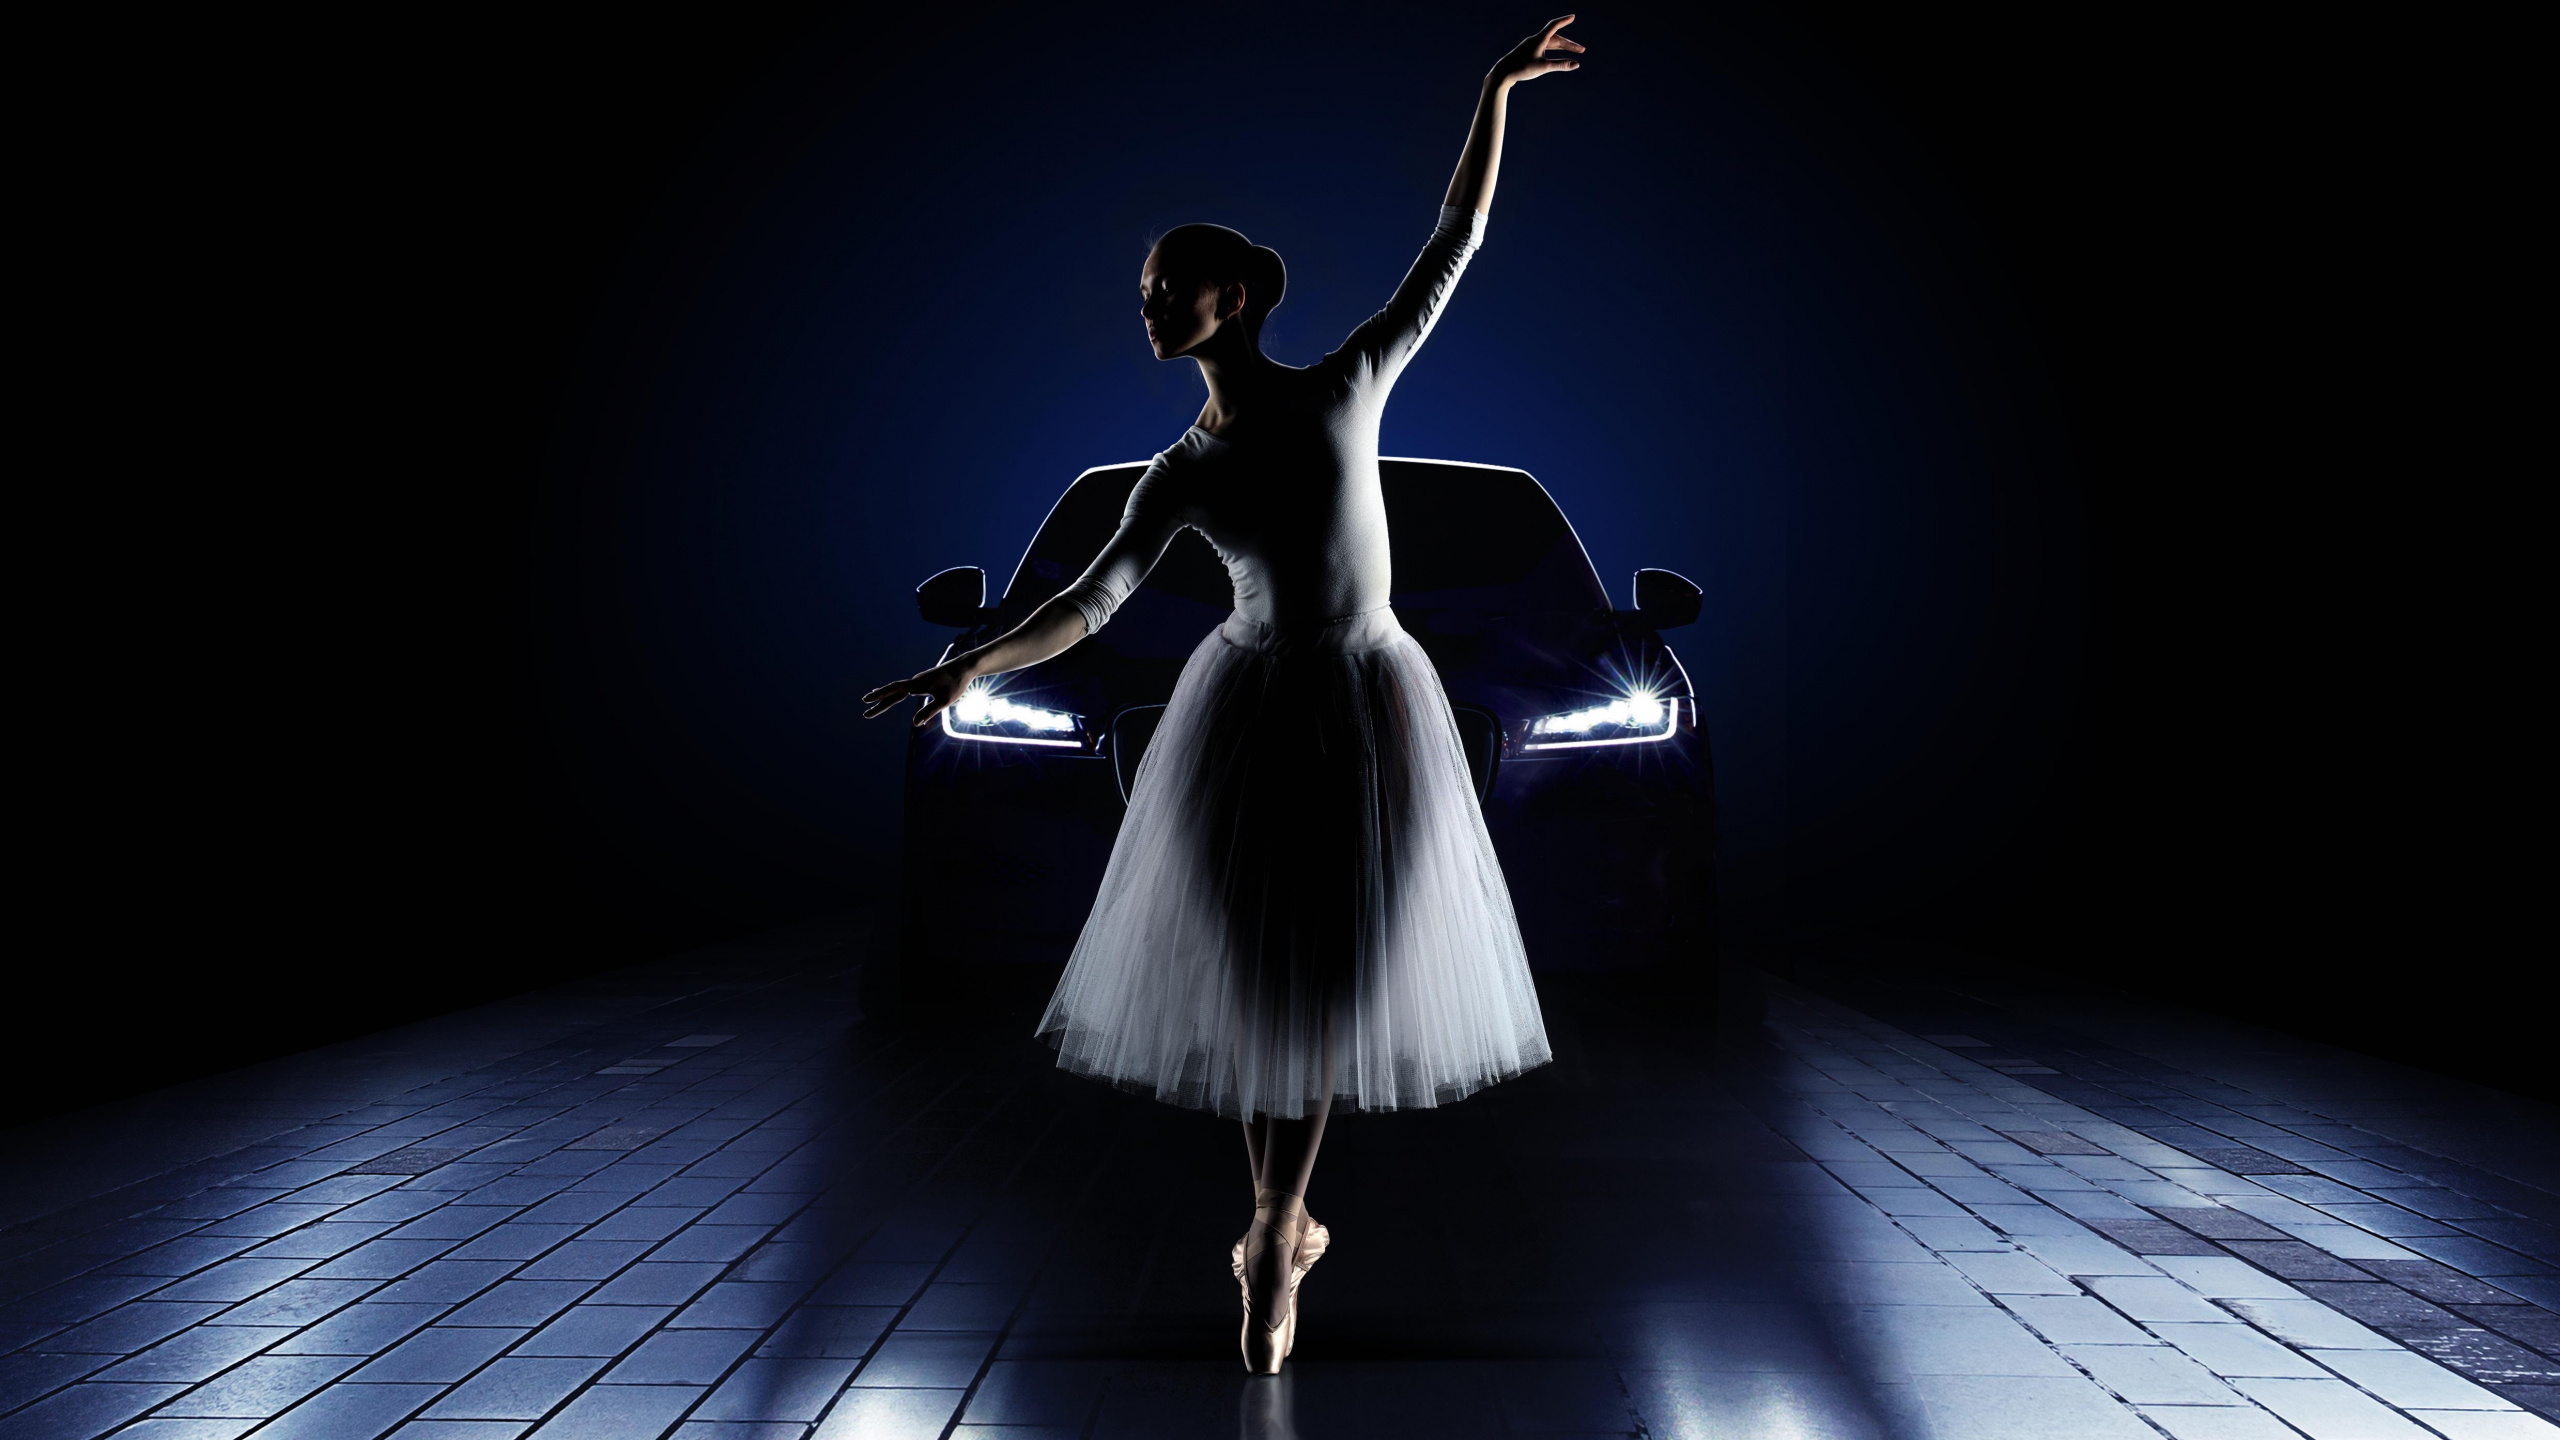 Ballet, Bailarina de Ballet, Luz, Bailarina, Baile. Wallpaper in 2560x1440 Resolution